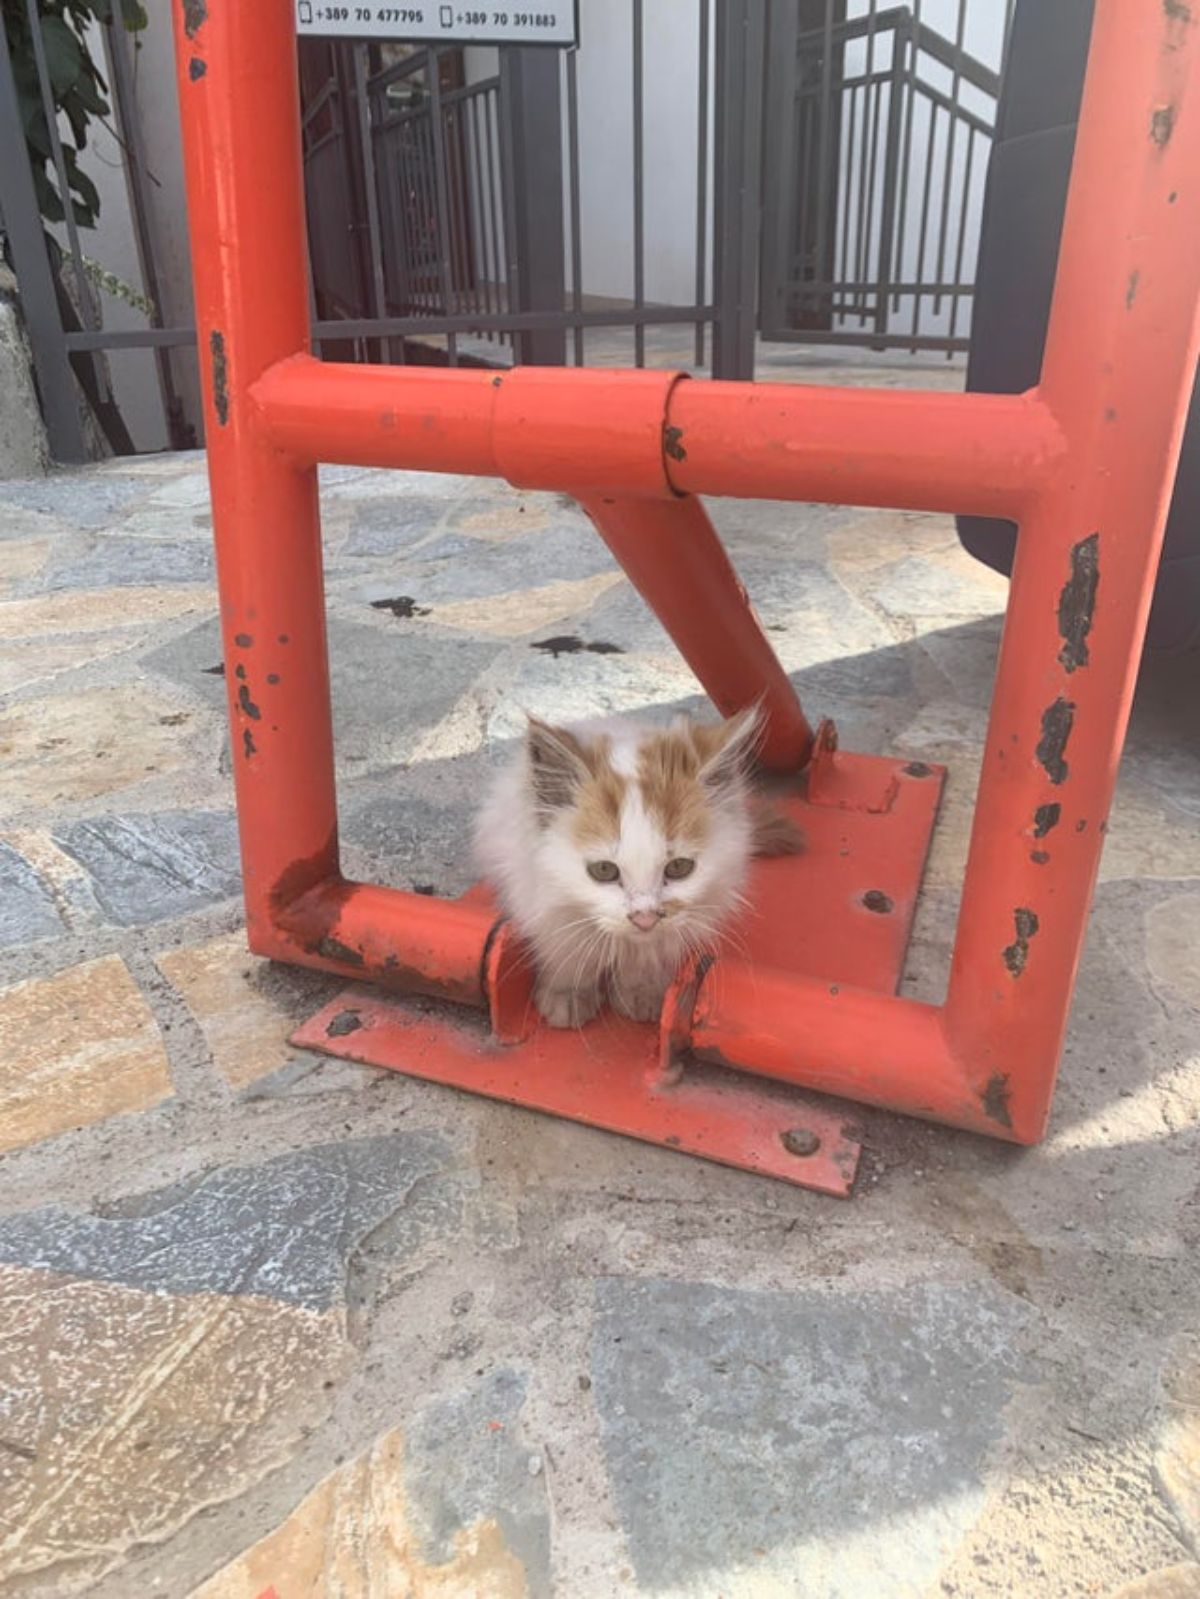 white and orange fluffy kitten sitting on an orange metal pipe